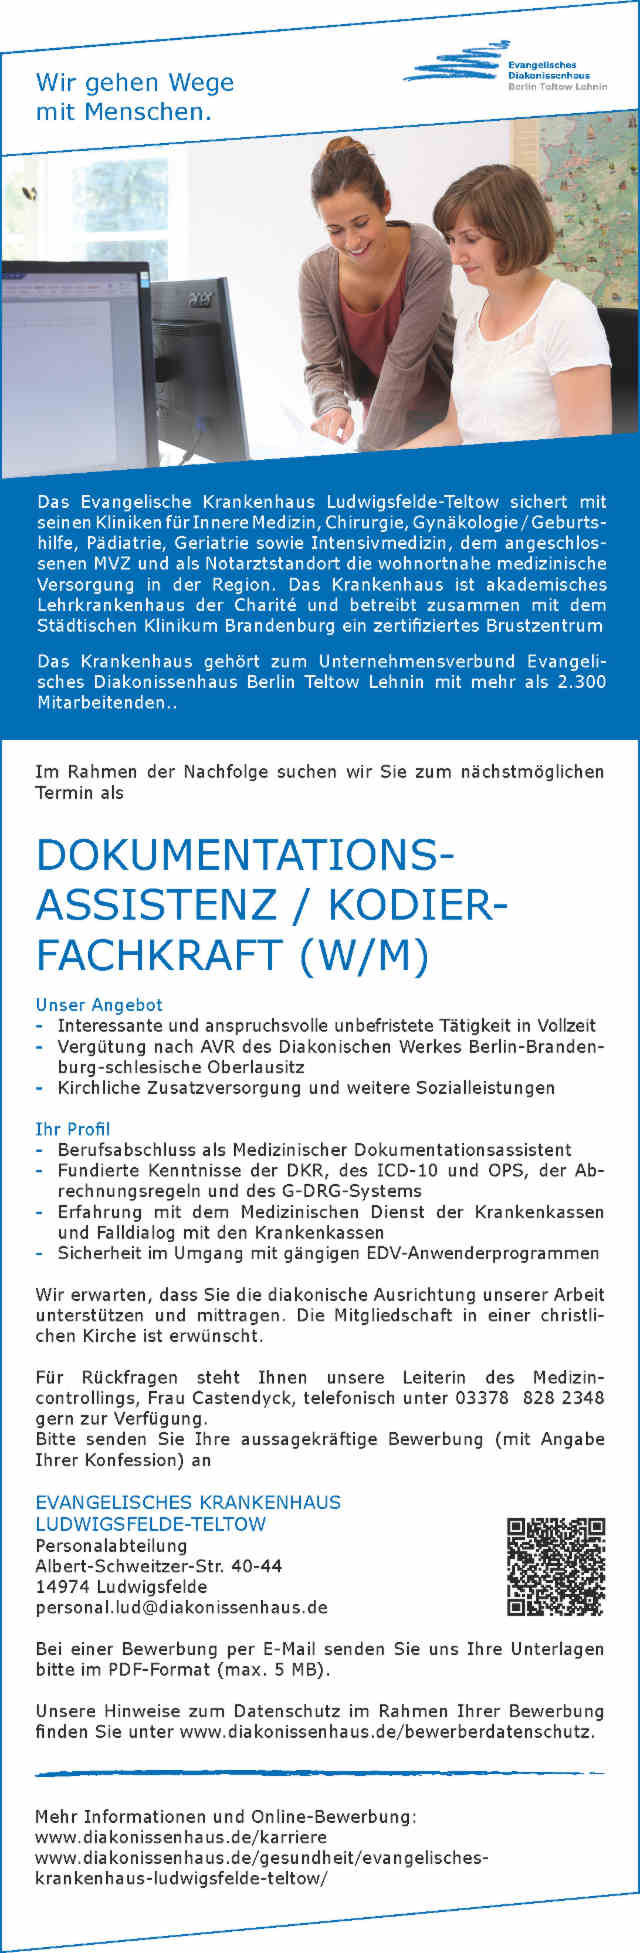 Ev. Krankenhaus Ludwigsfelde-Teltow: Dokumentationsassistenz / Kodierfachkraft (w/m)